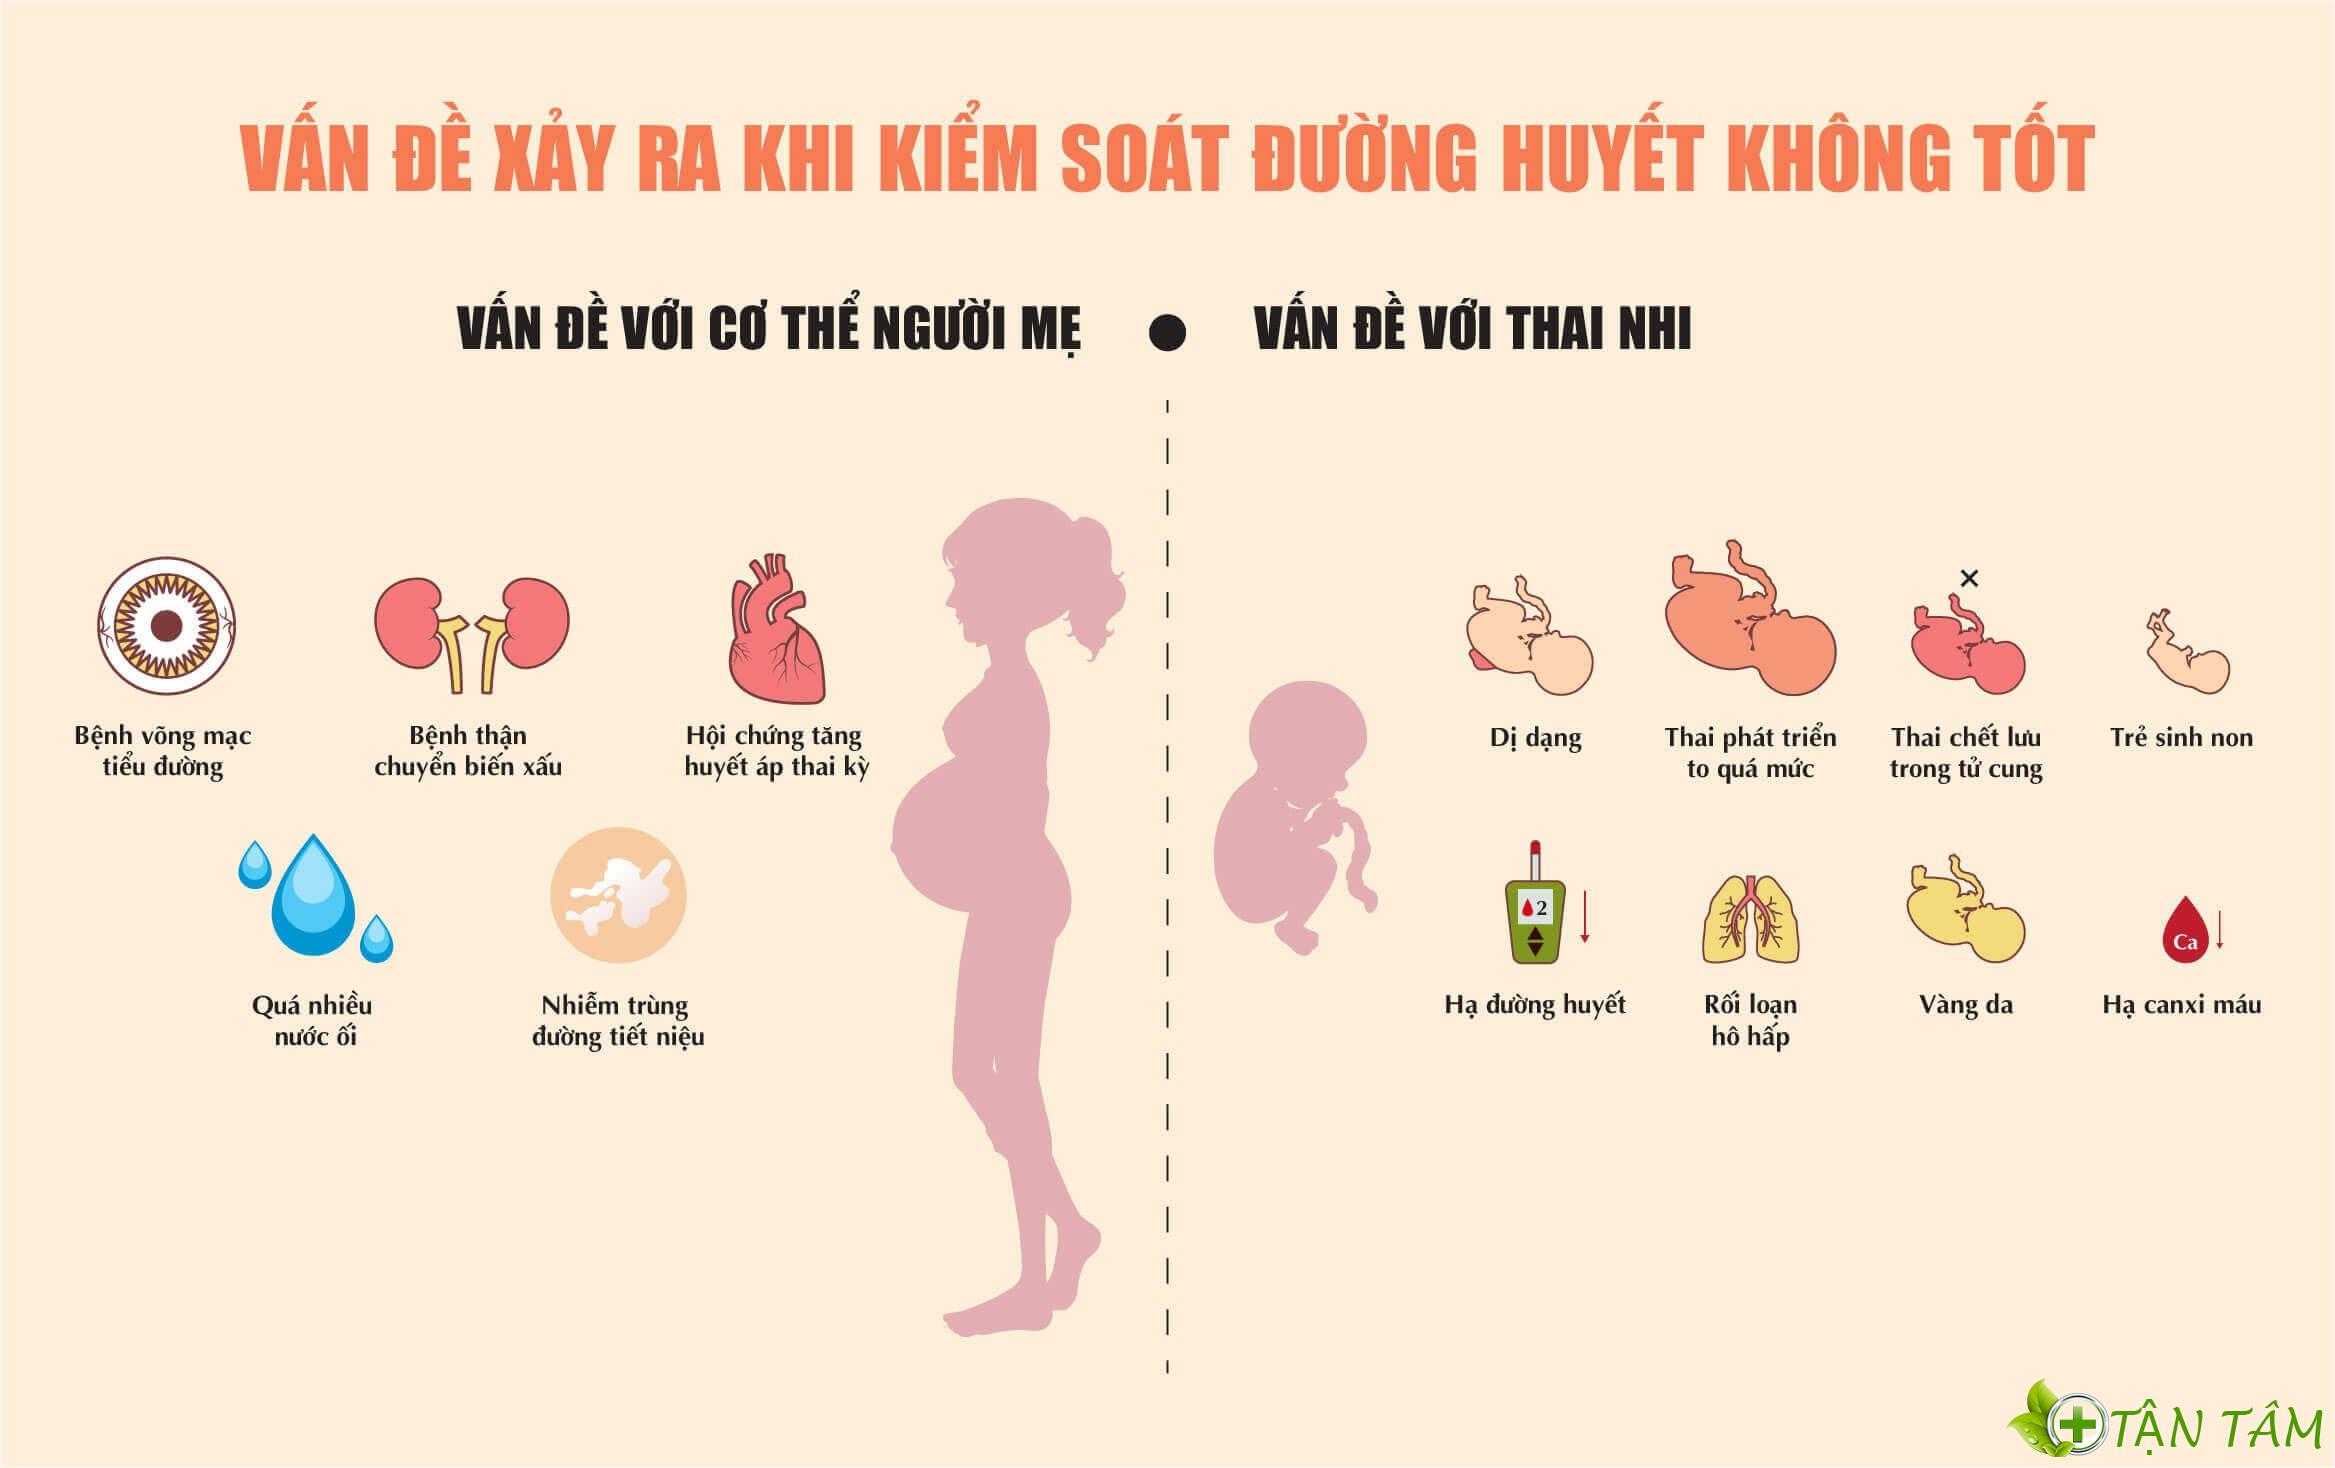 Chỉ số đường huyết bình thường của thai phụ là bao nhiêu? theo dõi bằng cách nào?